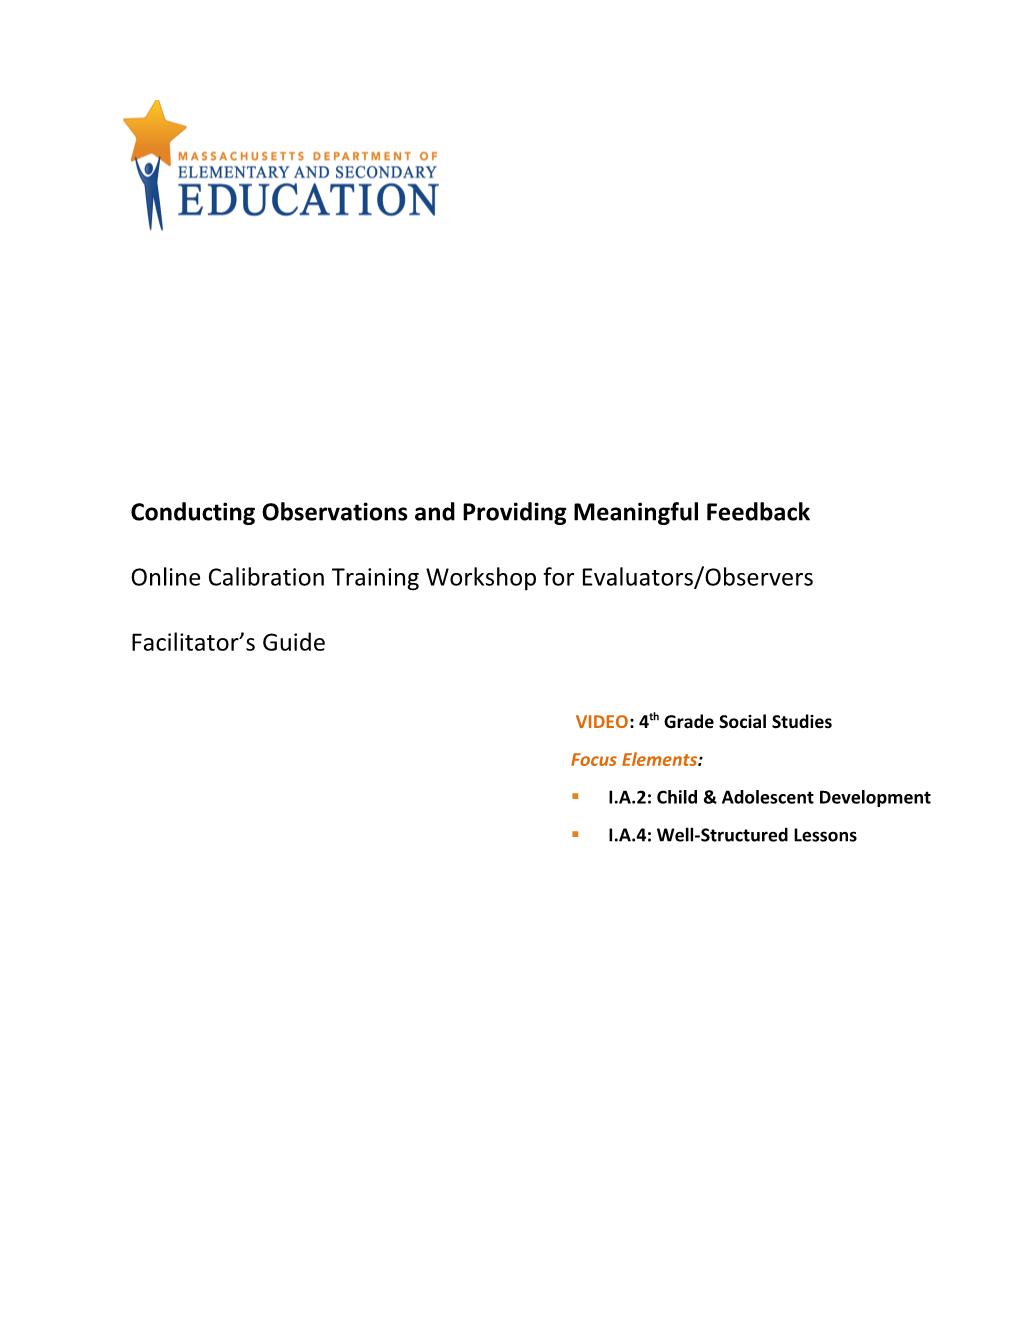 Calibration Workshop Facilitators Guide: 4Th Grade Social Studies